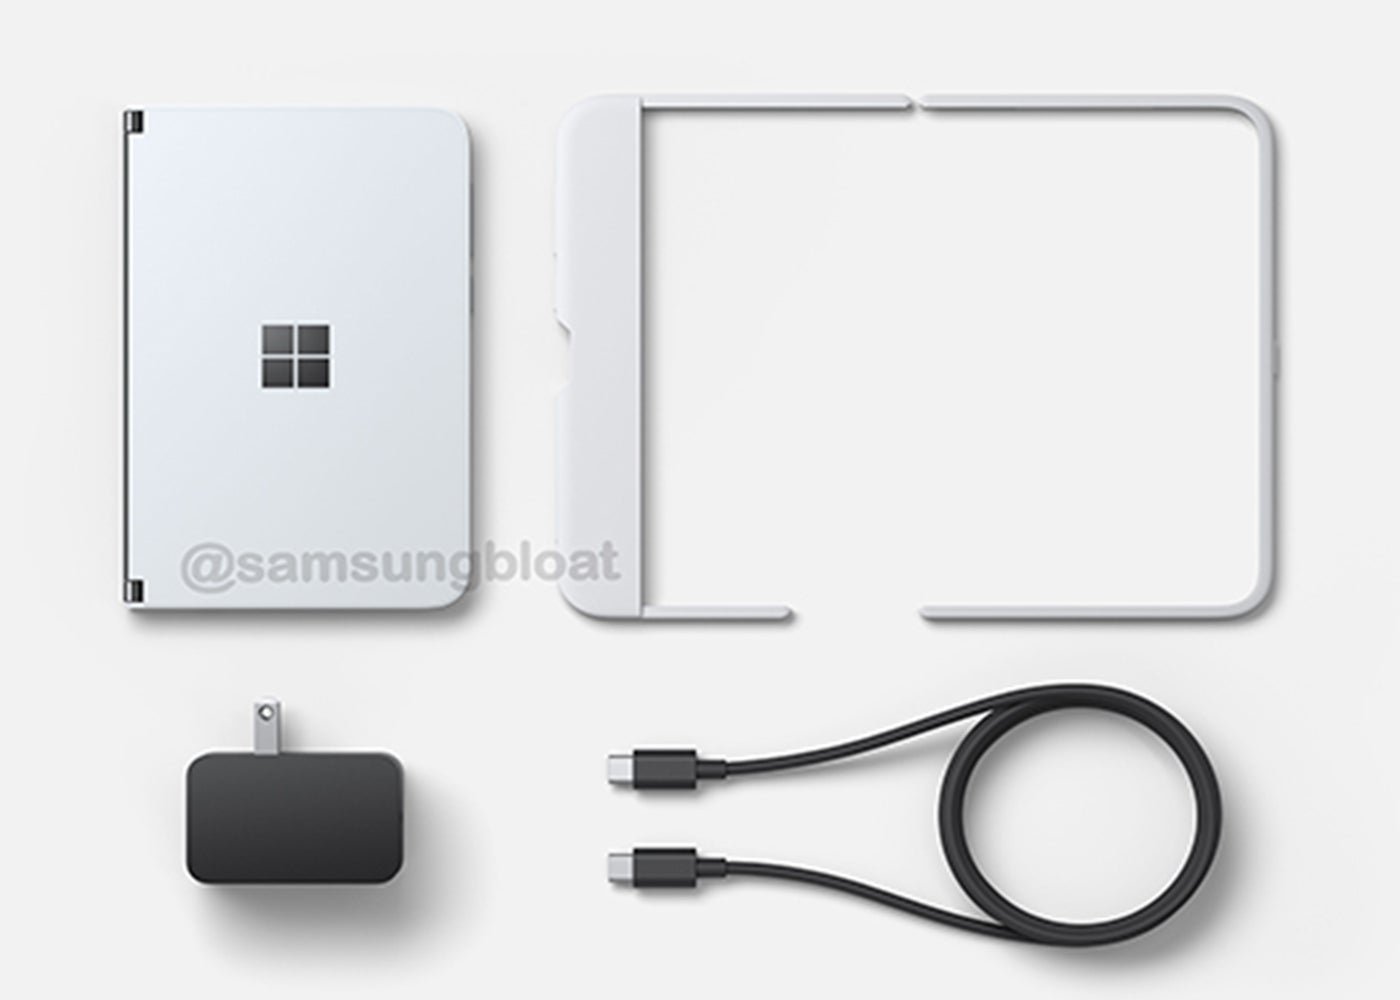 Filtrado al completo el Microsoft Surface Duo, precio incluido